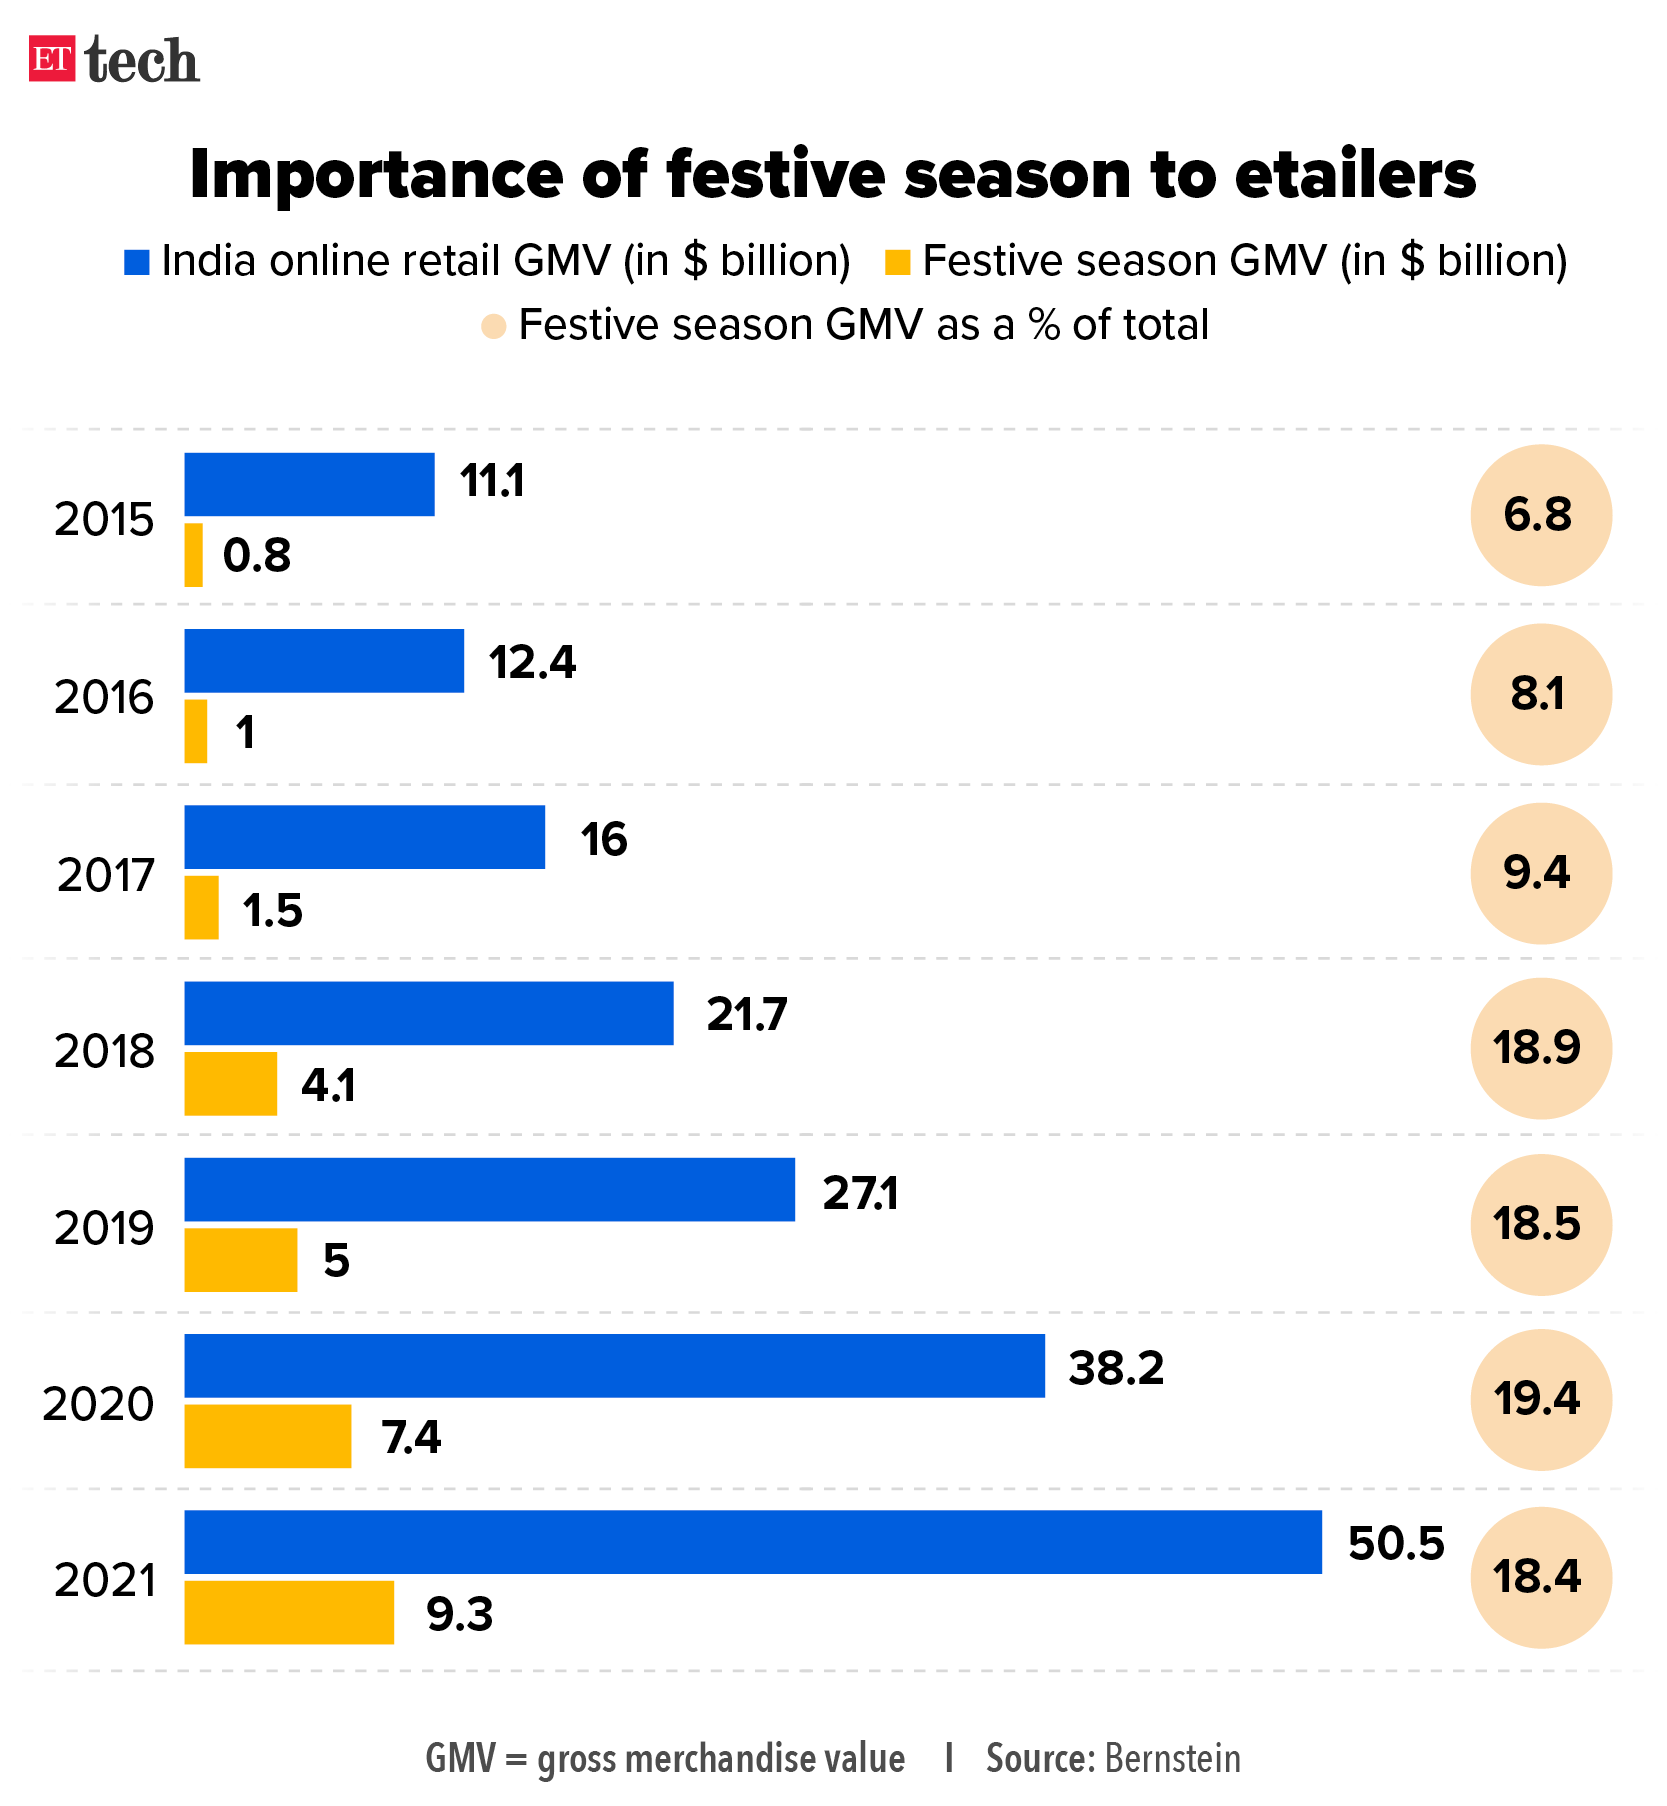 The holiday season for e-merchants